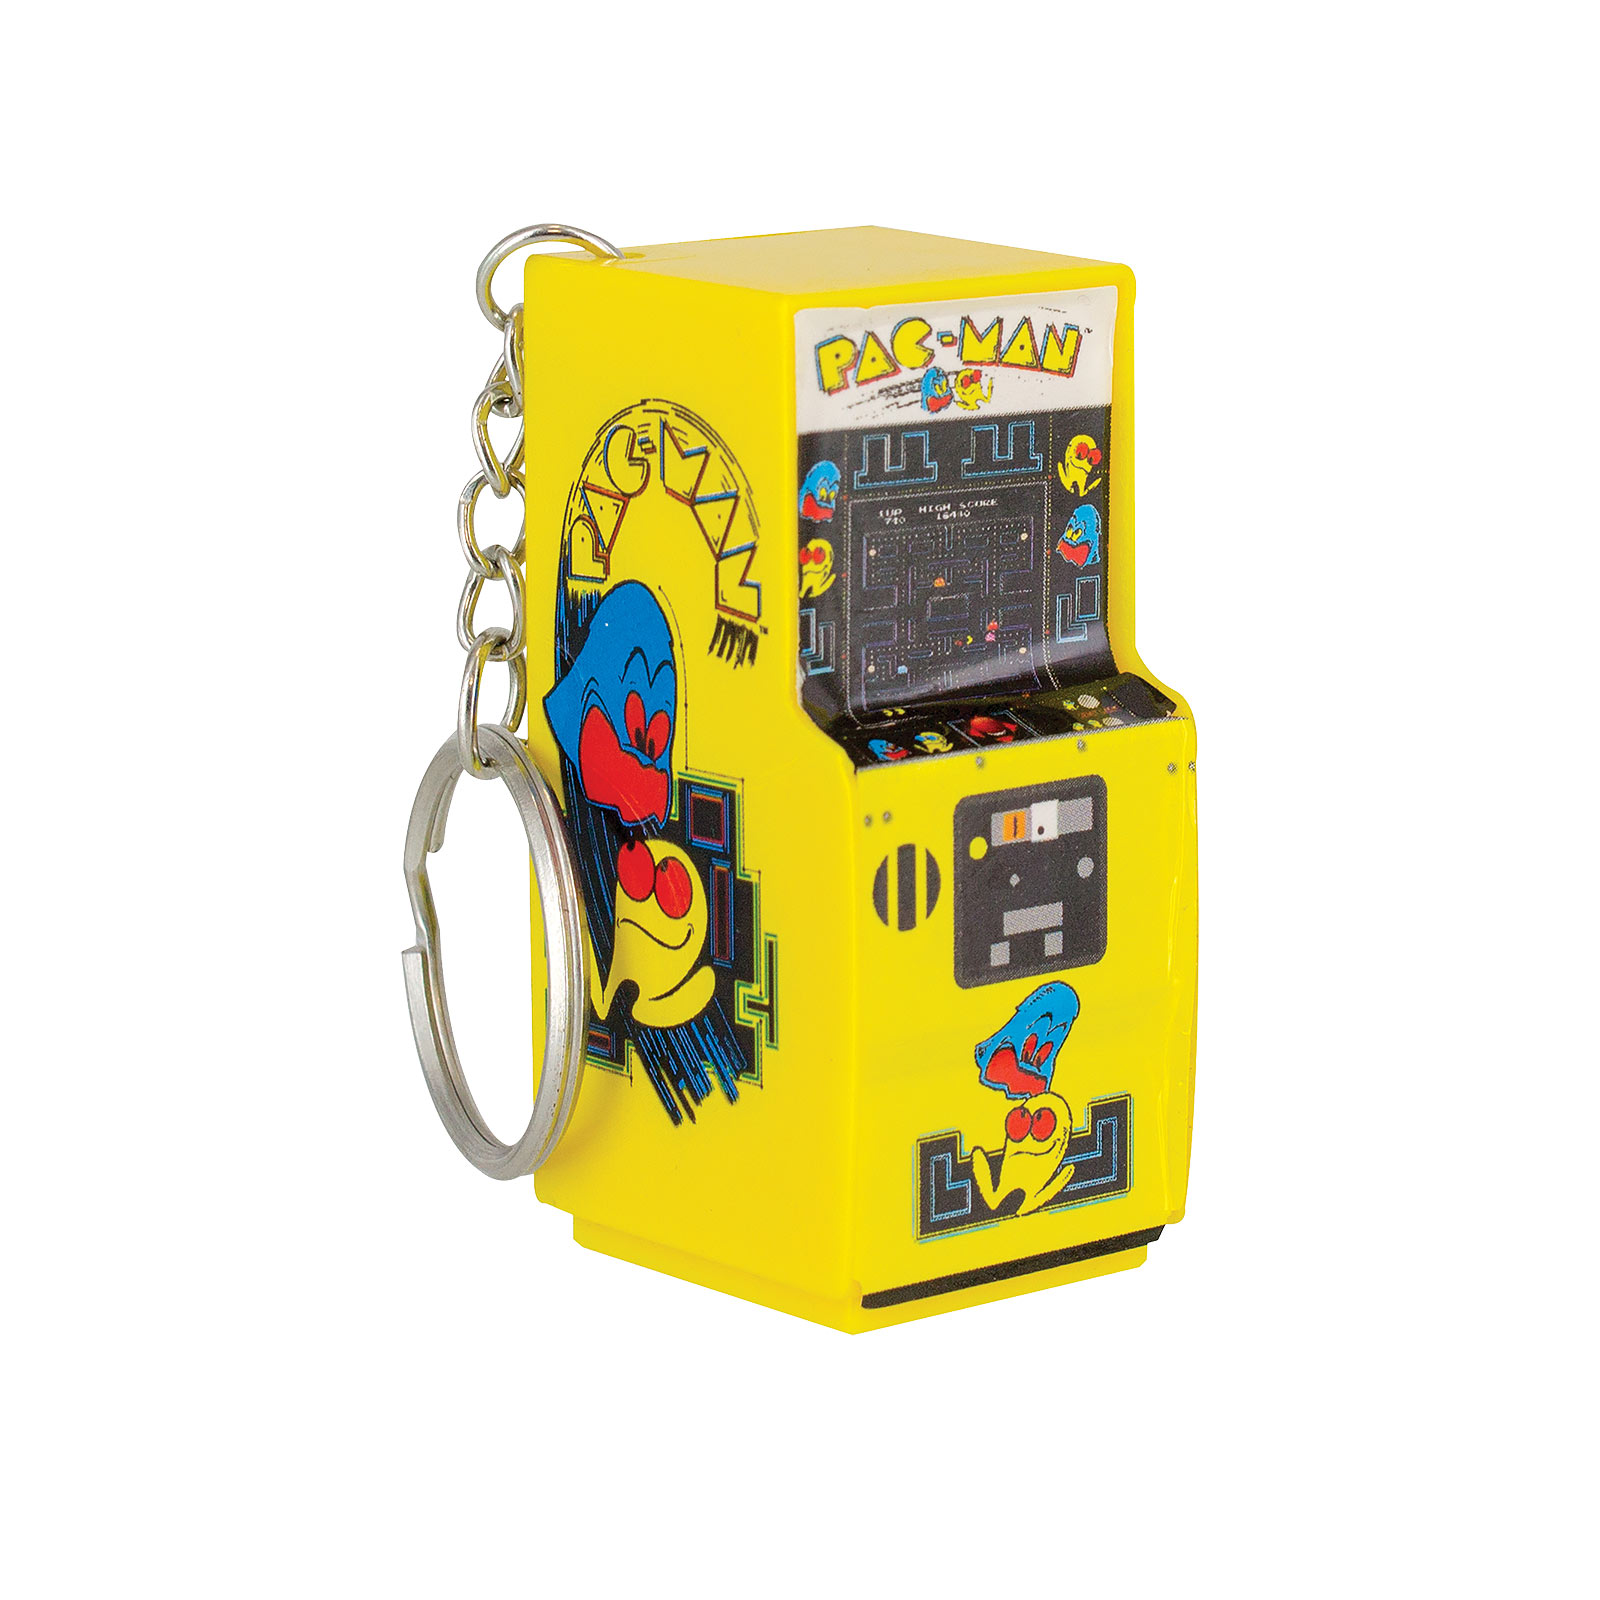 Pac-Man - Arcade Sleutelhanger